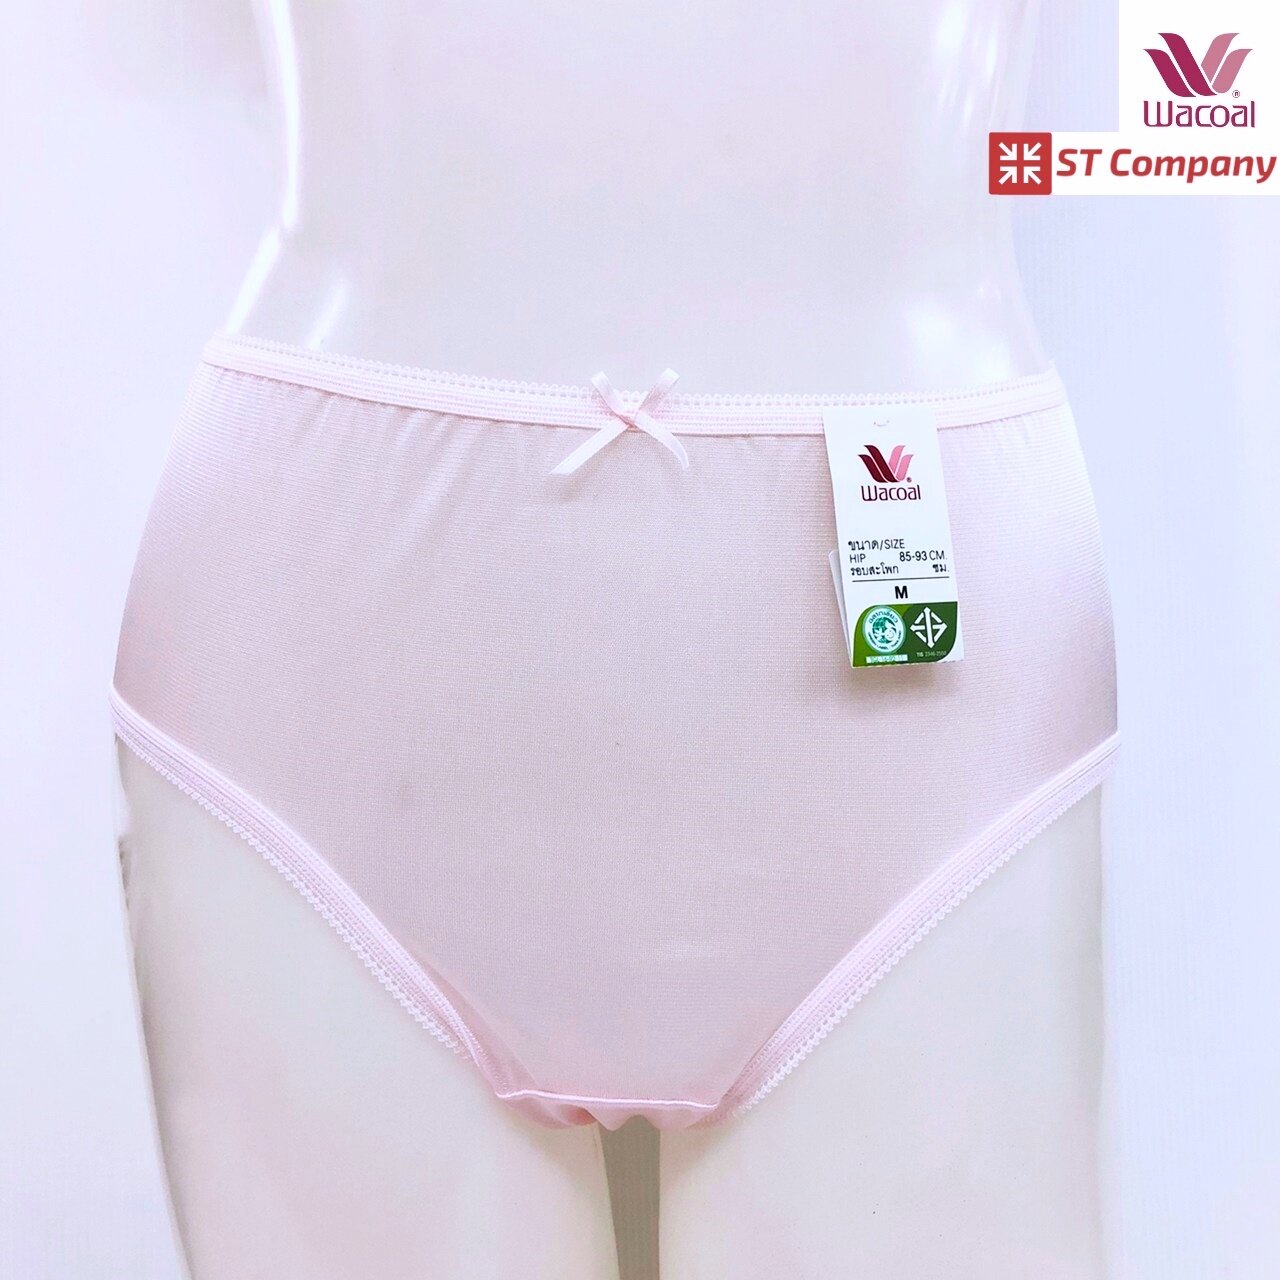 กางเกงใน ยางจักลา Wacoal แบบเต็มตัว (Short) สีชมพูอ่อน (ฺPI) 1 ตัว ผ้าลื่น ผ้ามัน ผ้าไนล่อน เนื้อผ้าเงางาม สวมใส่สบาย ซักง่าย แห้งไว รุ่น WU4336